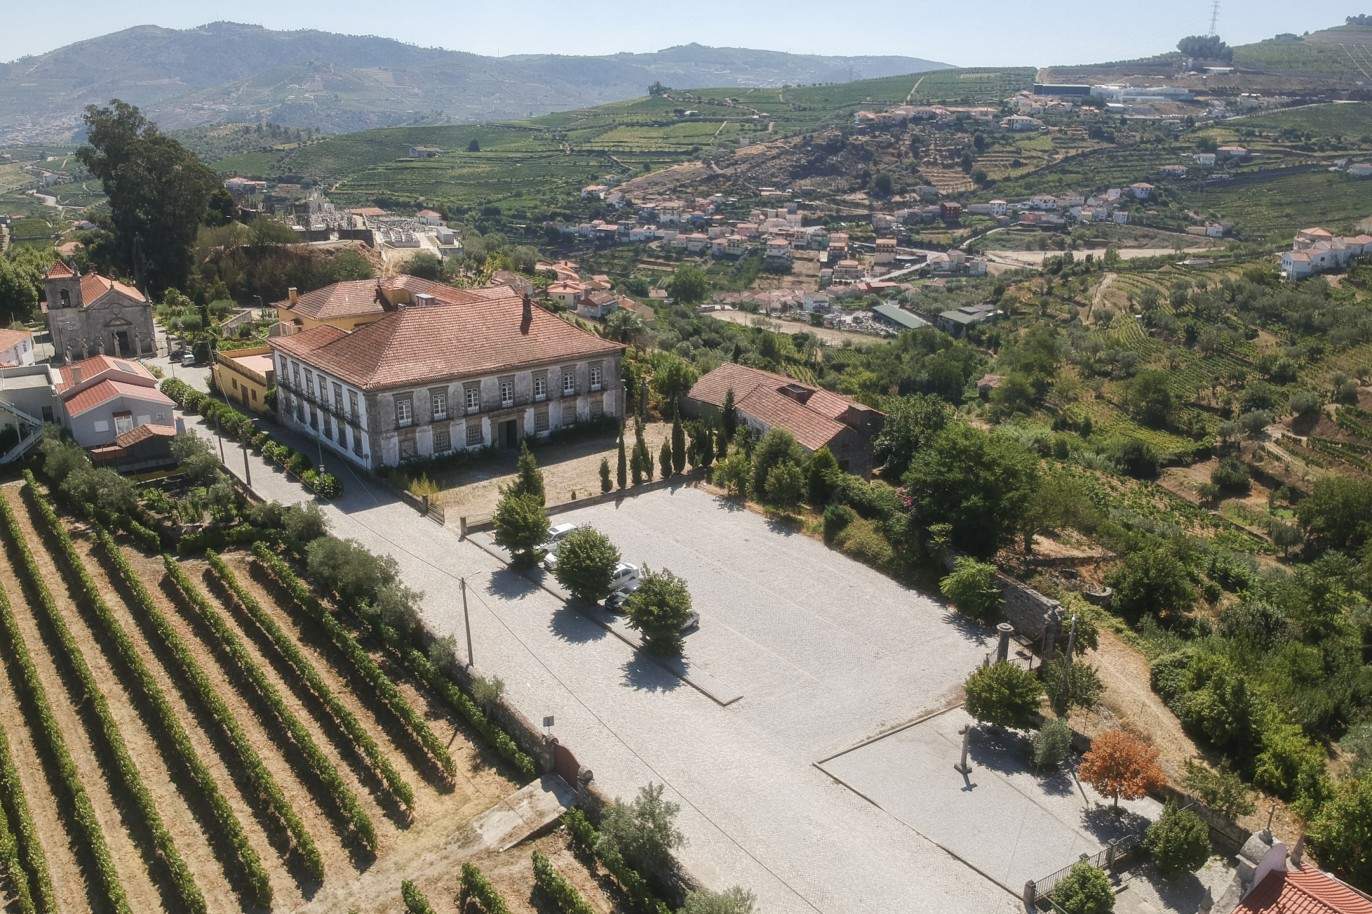 Venta: Palacete para restaurar con jardines y fuente centenaria, en Lamego, región vinícola del Alto Duero, norte de Portugal_207356